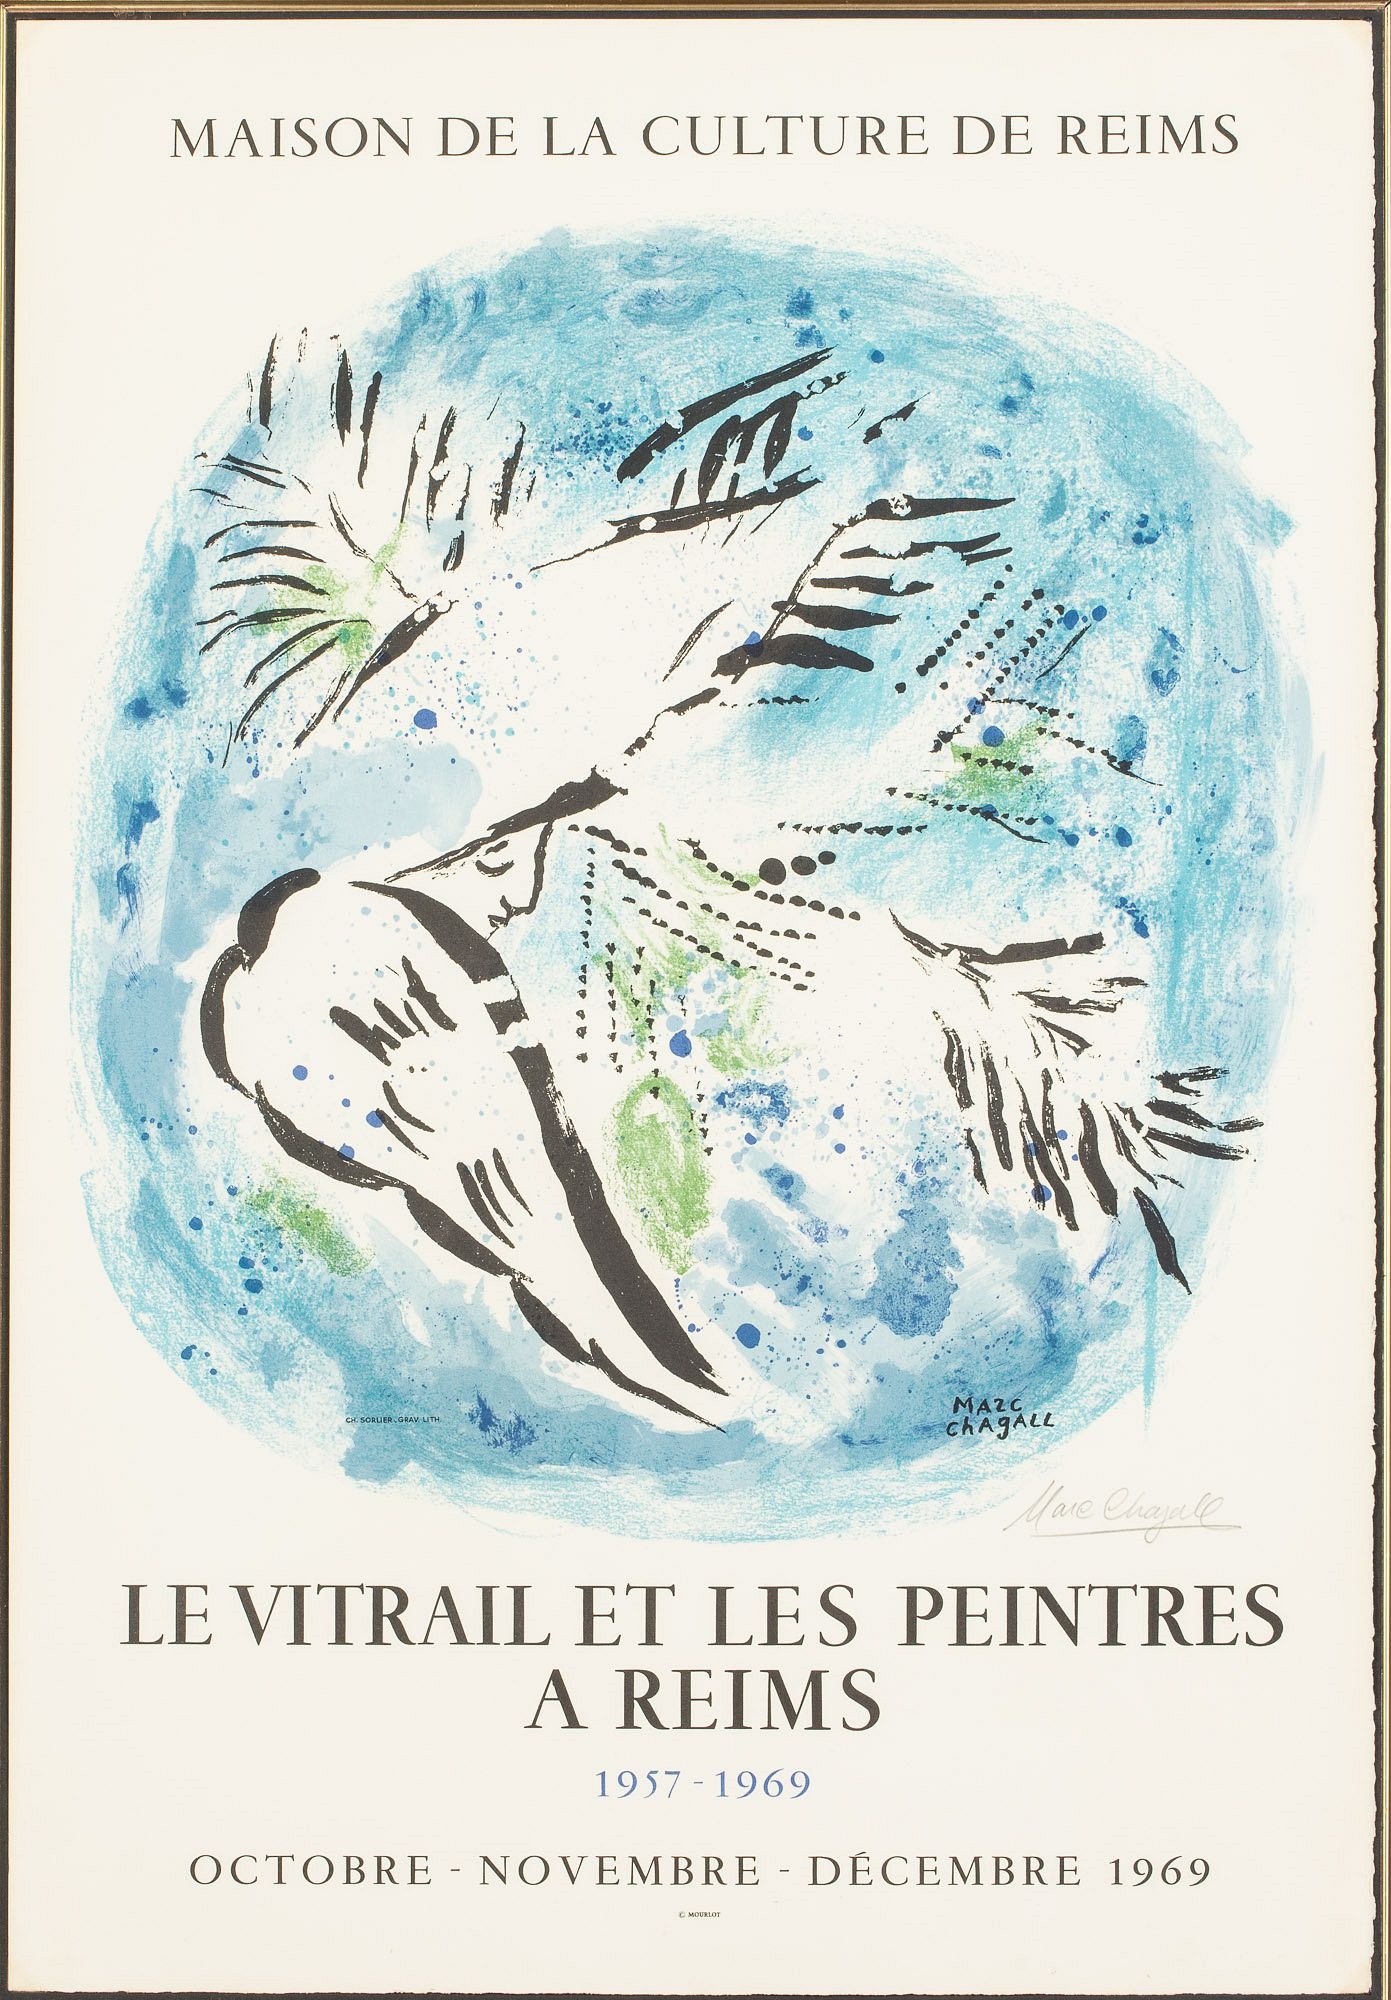 Le Vitrail et Les Peintres a Reims by Marc Chagall